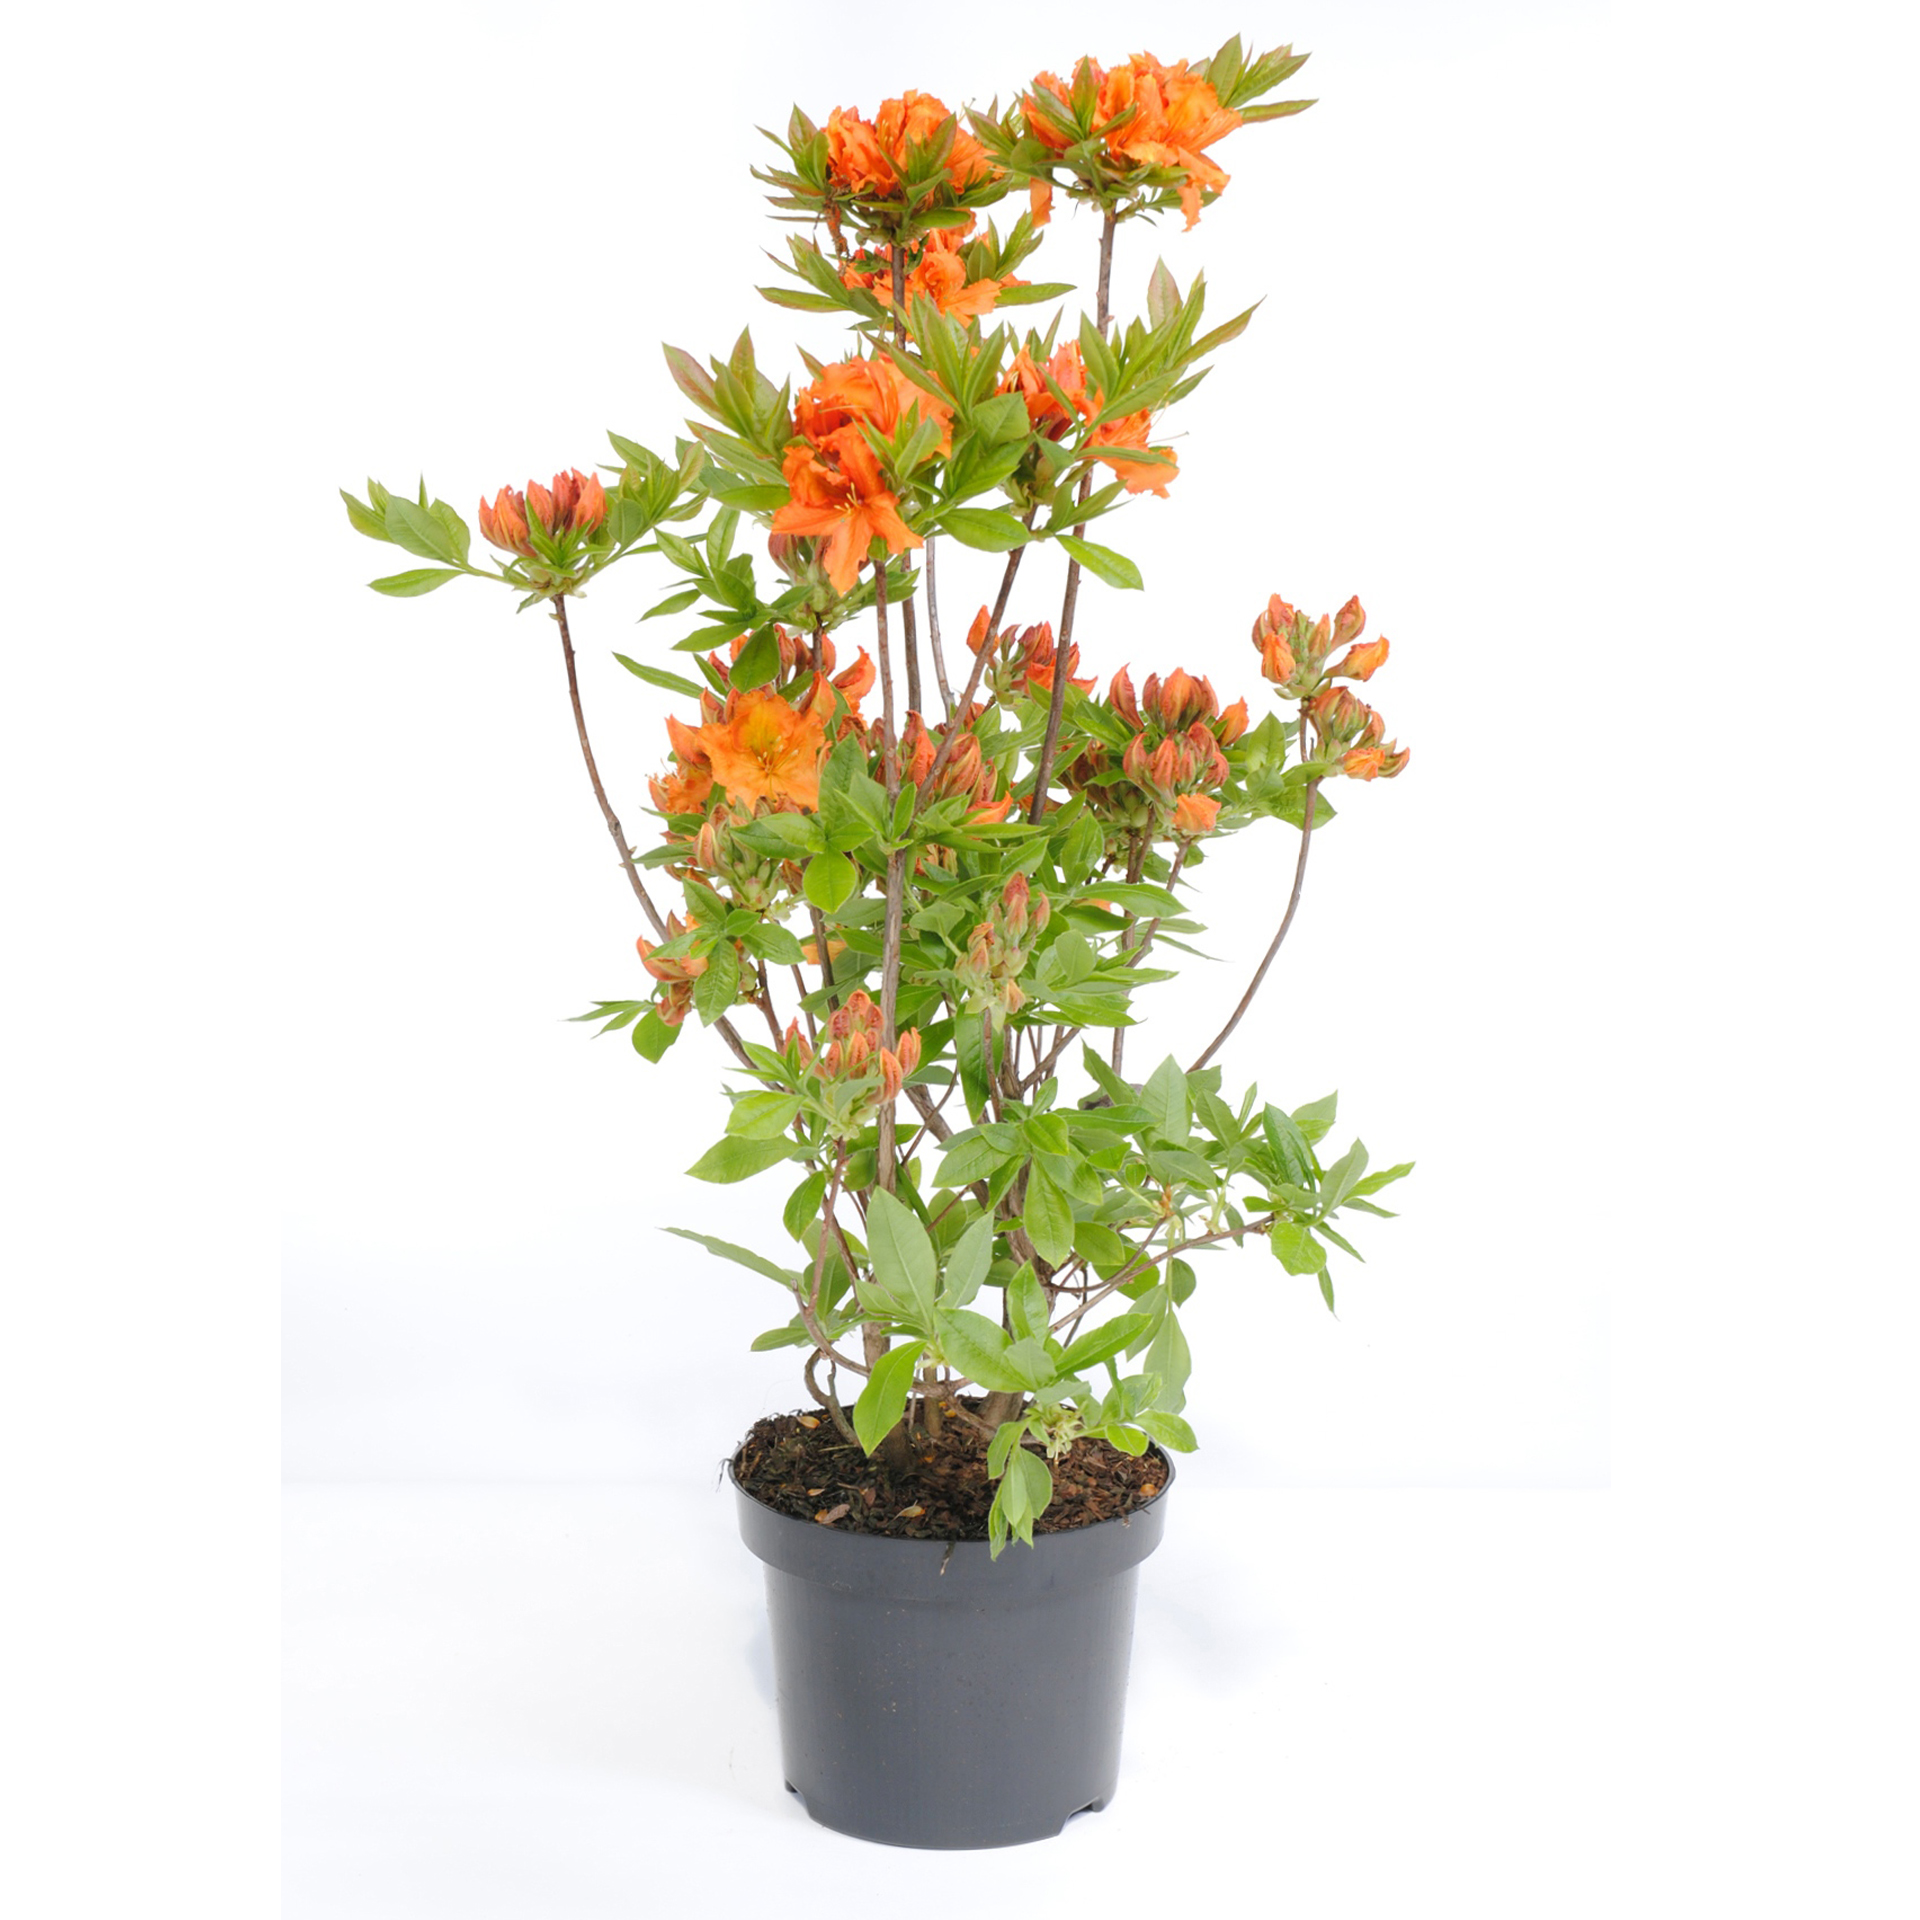 Schmuck-Azalee Gibraltar Strauch leuchtende Orange Blüten 